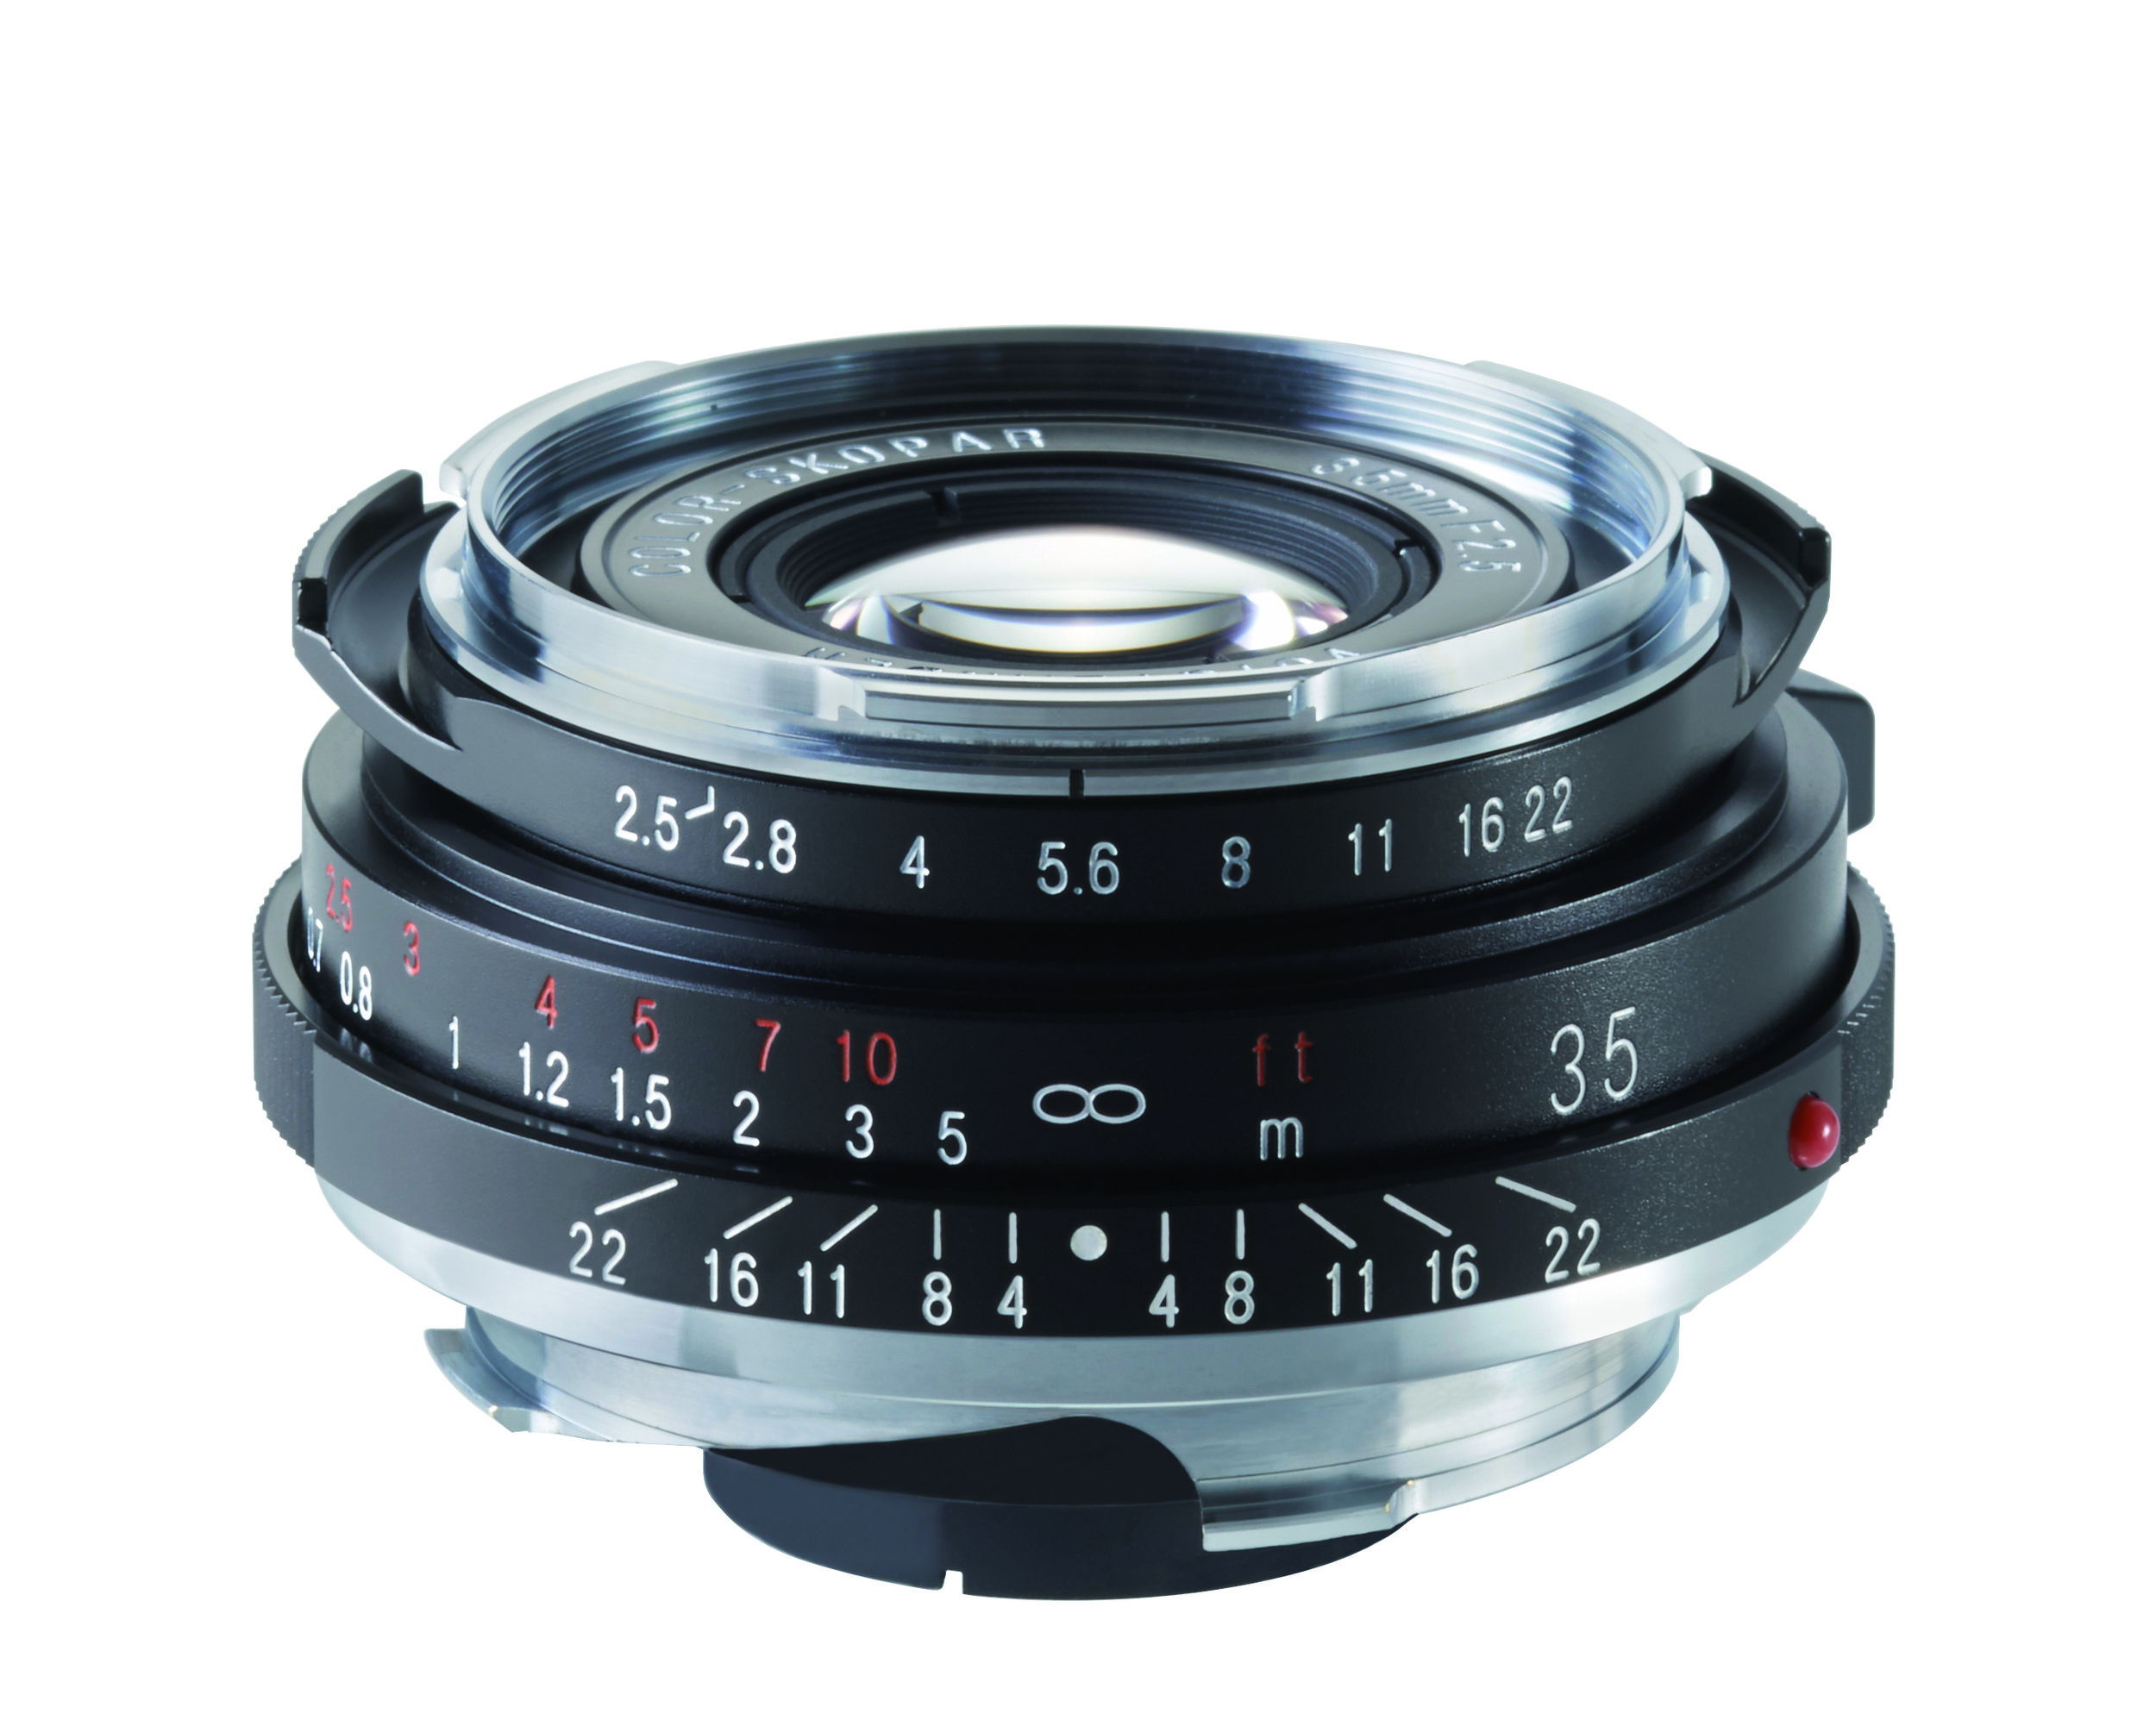 Test Chart for Voigtlander 35mm F/2.5 Color Skopar Lens 